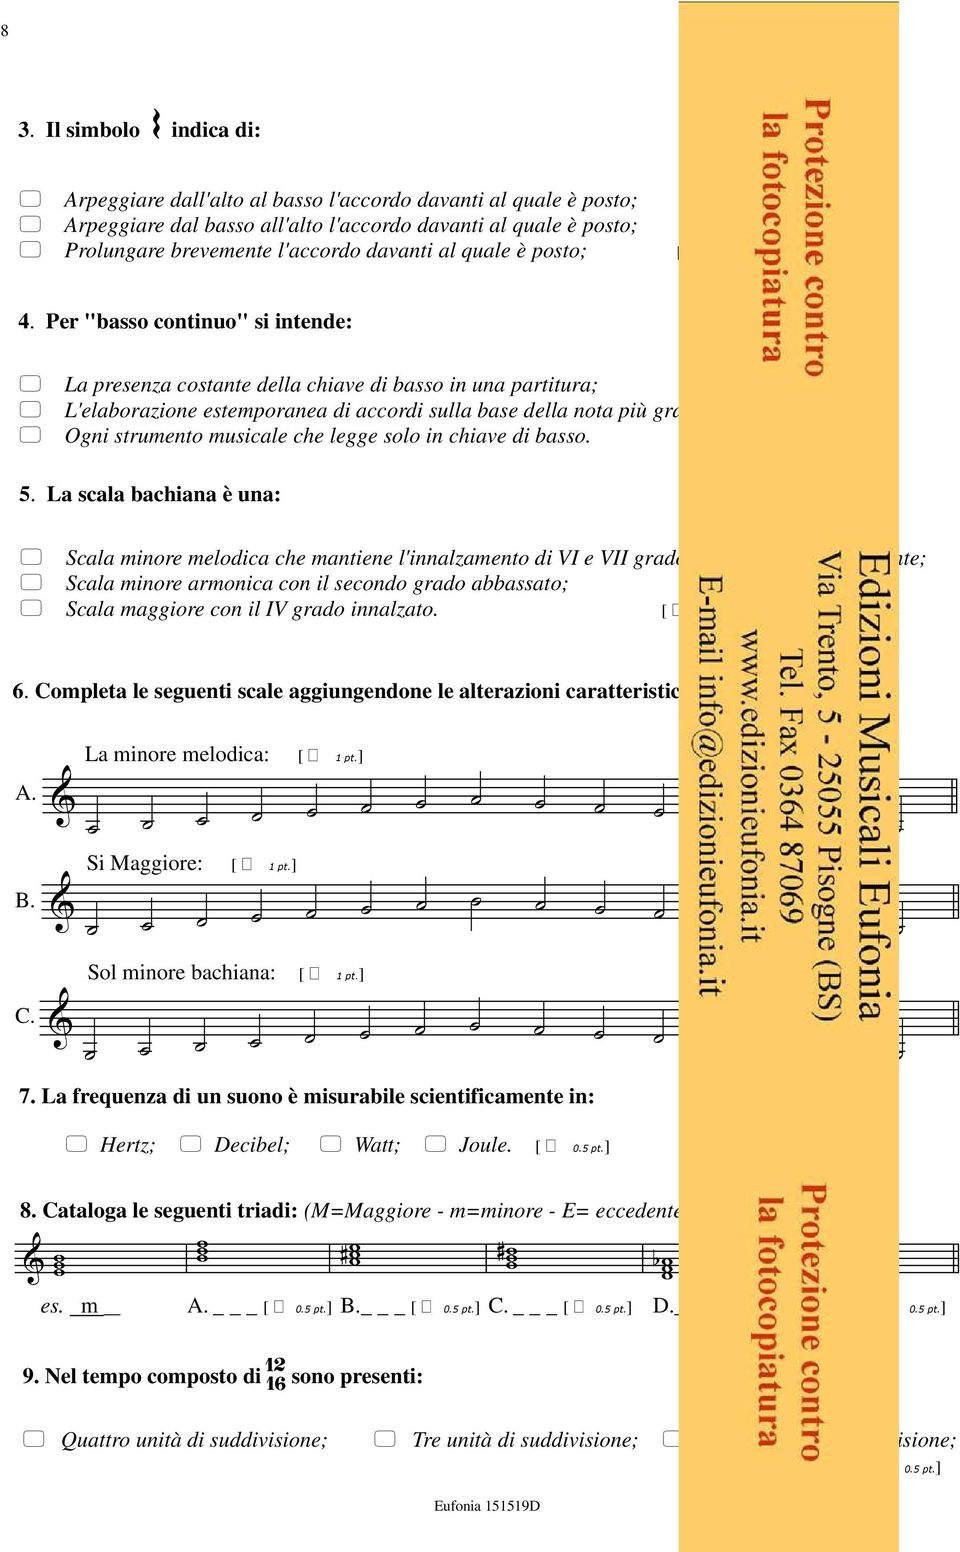 Per "basso continuo" si intende: La presenza costante della chiave di basso in una partitura; L'elaborazione estemporanea di accordi sulla base della nota più grave della partitura; Ogni strumento